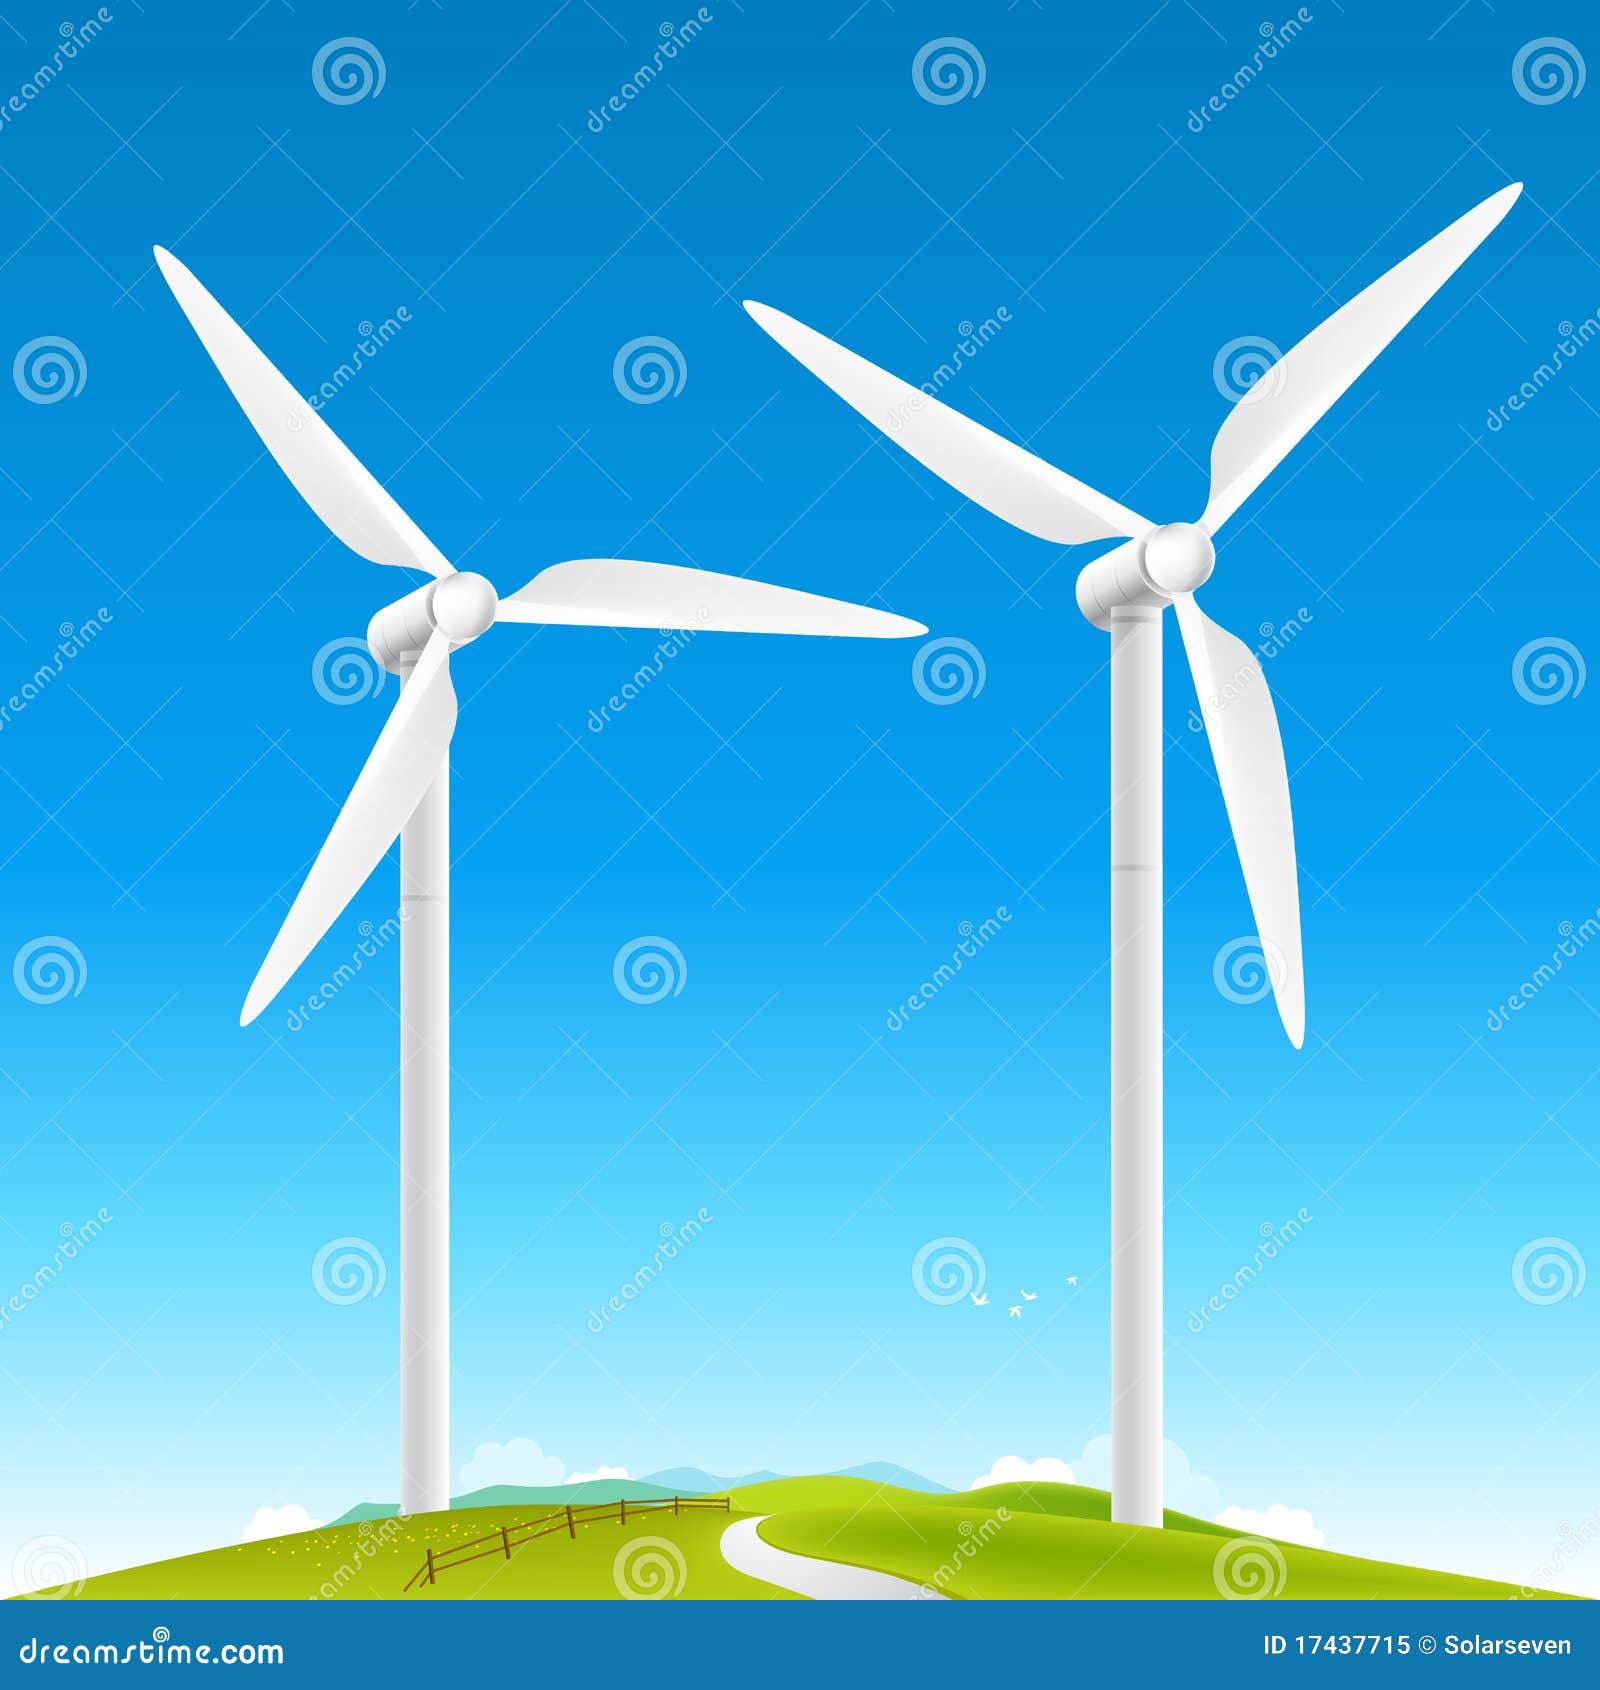 8 ideas de Molinos de viento  molinos de viento, viento, viento dibujo